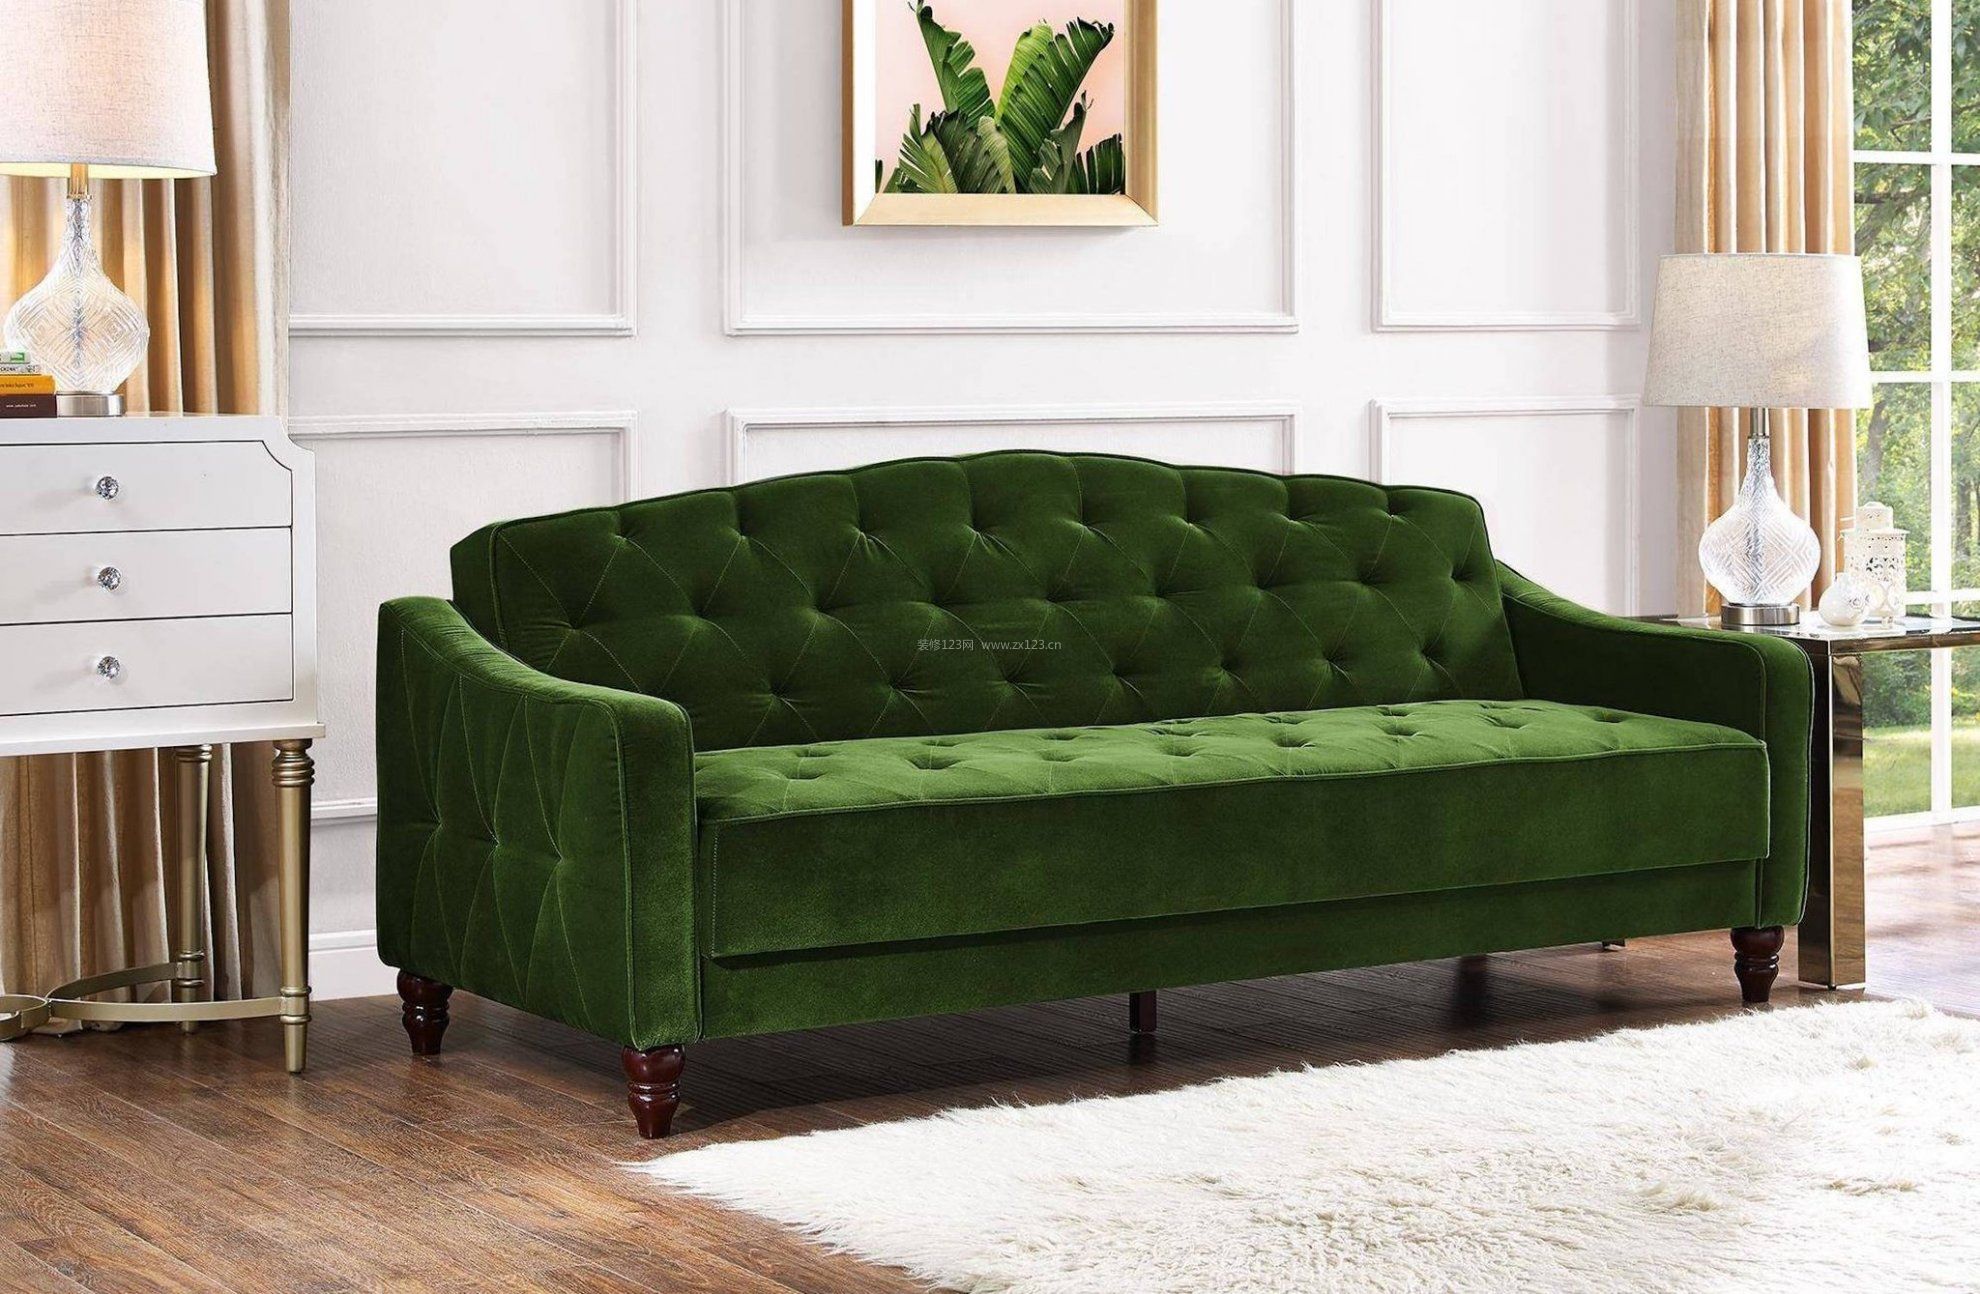 2017绿色欧式风格家居沙发图片